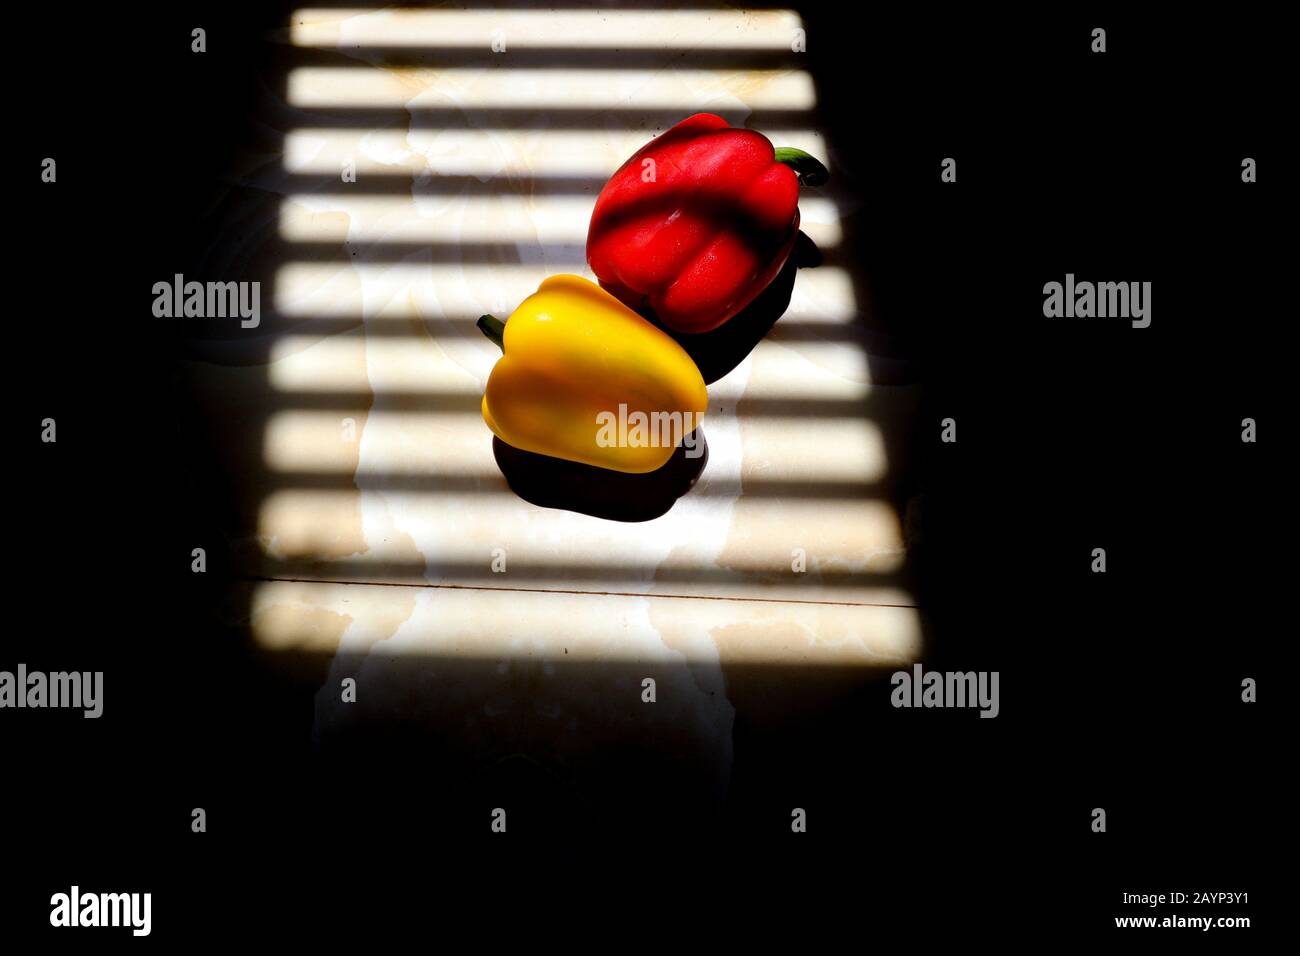 Gelbe und rote Paprika mit gestreiften Schattenlinien aus einem Fenster, um das Konzept von Gastronomie, Ernährung und Veganismus zu zeigen Stockfoto